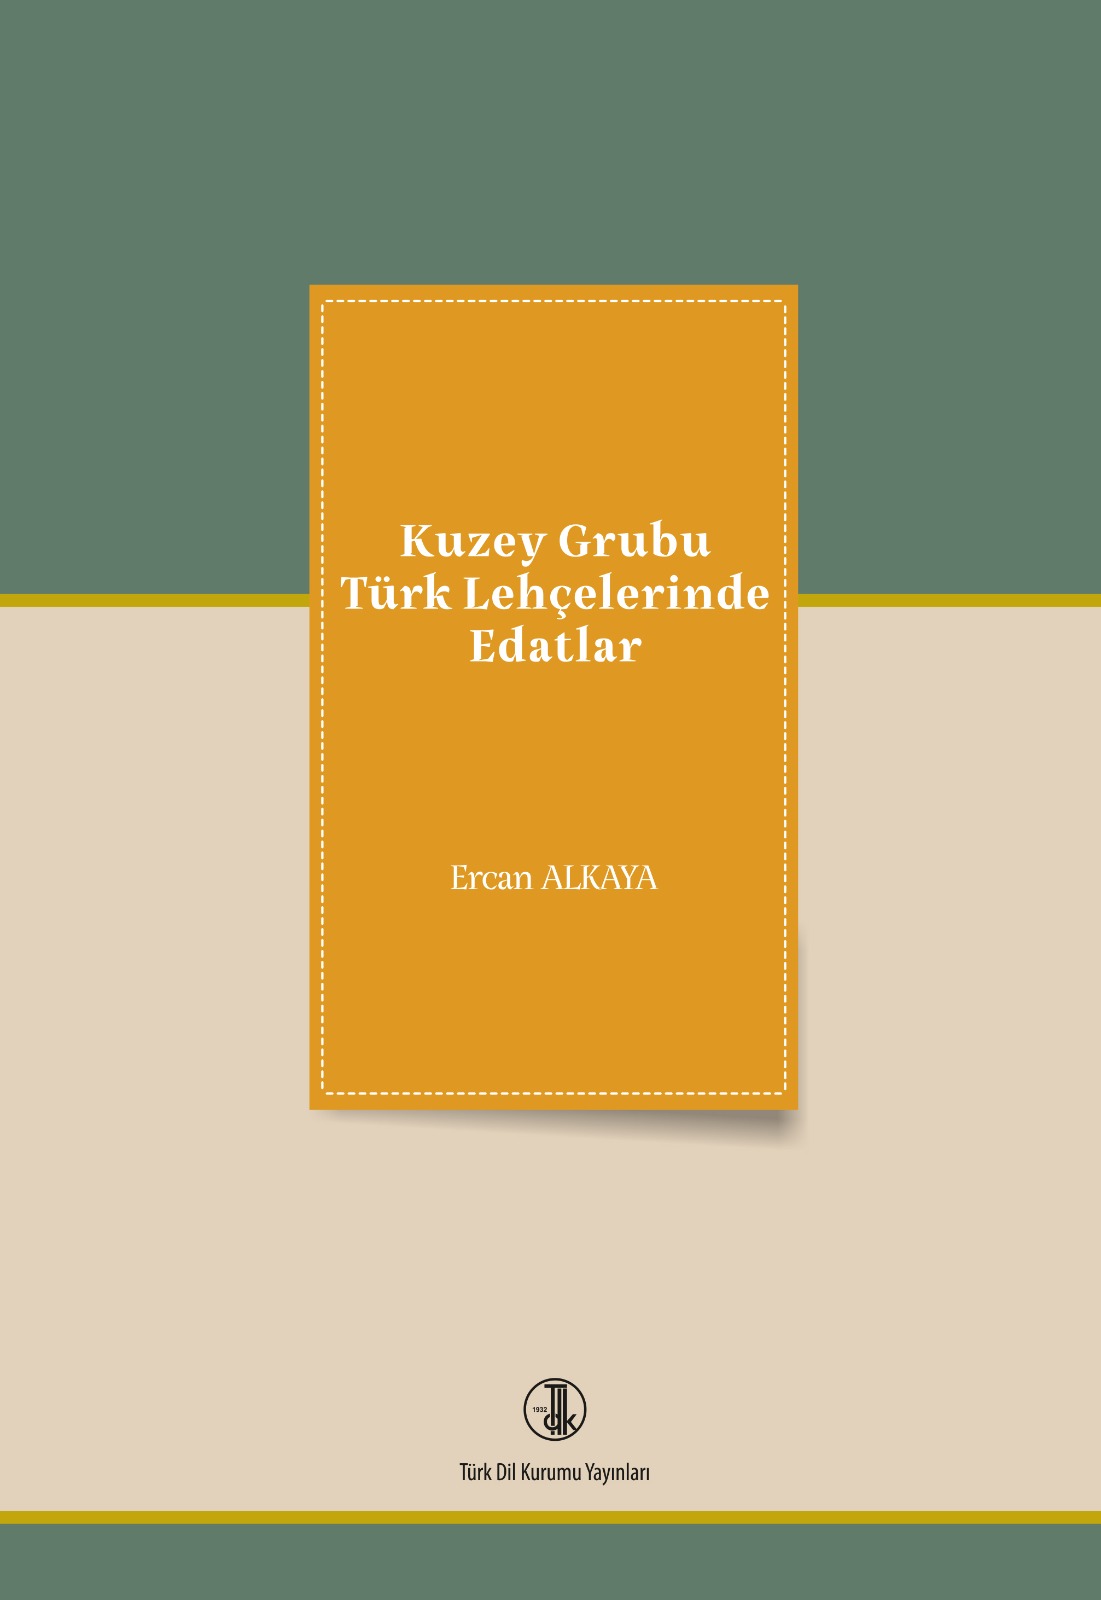 Kuzey Grubu Türk Lehçelerinde Edatlar, 2022